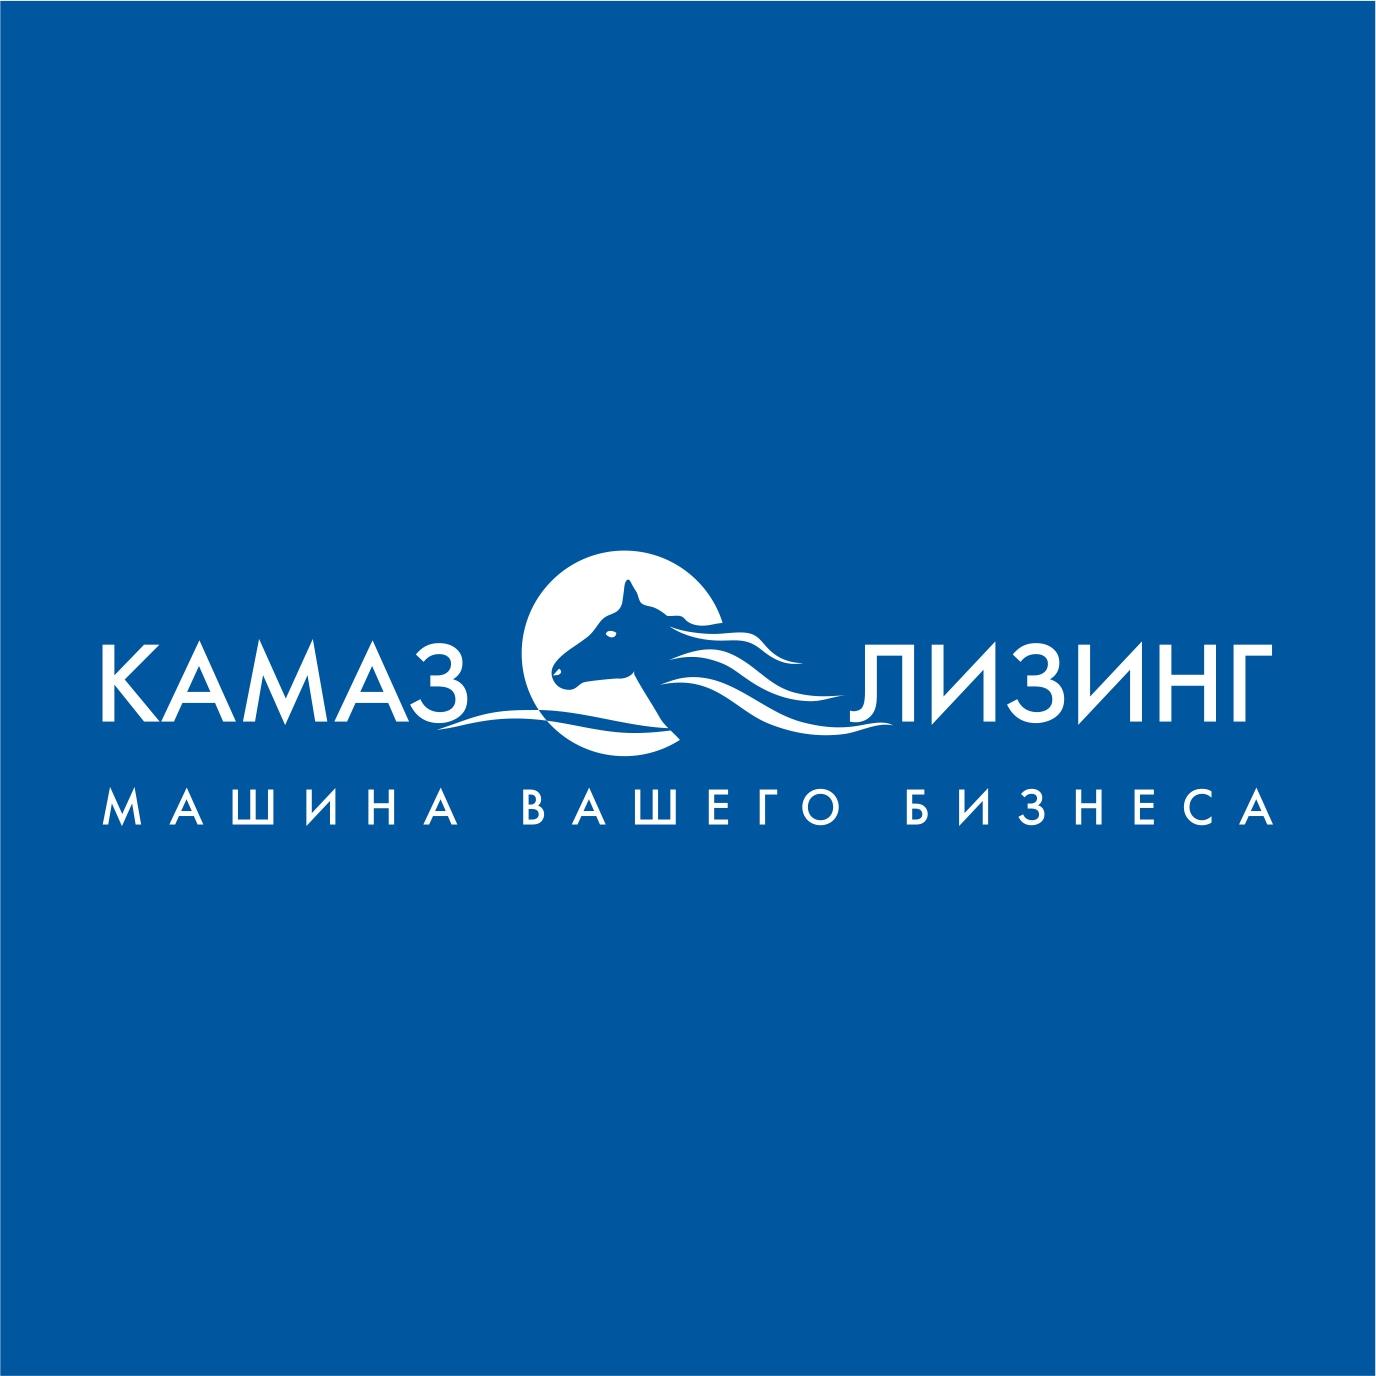 «КАМАЗ-ЛИЗИНГ» - в ТОП-3 рынка лизинга